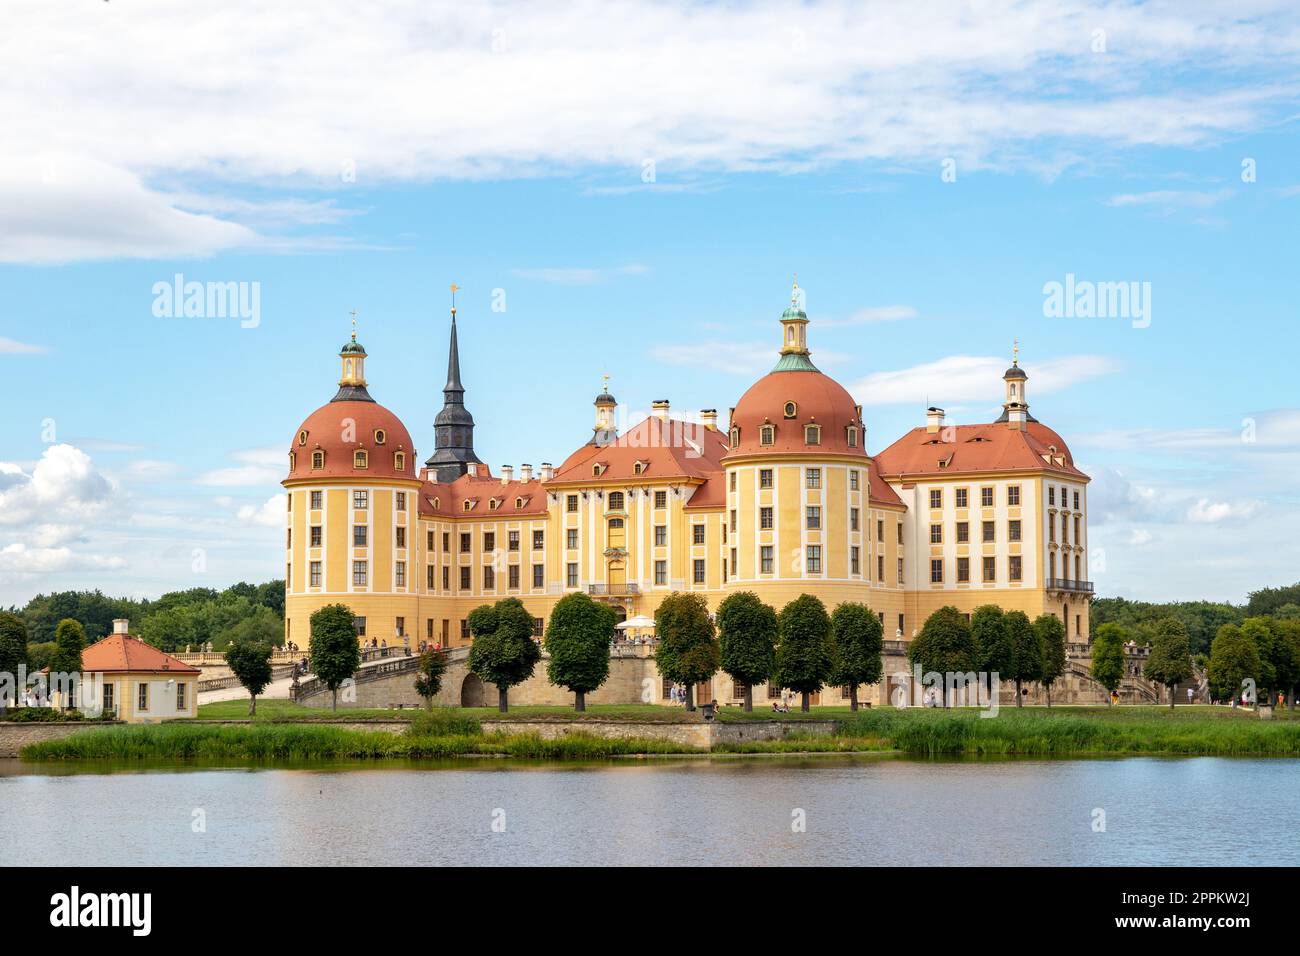 Allemagne, Saxe, Moritzburg. Le château a été construit par le duc Moritz comme pavillon de chasse et est devenu un palais royal de plaisance sous le règne d'août le fort. Banque D'Images